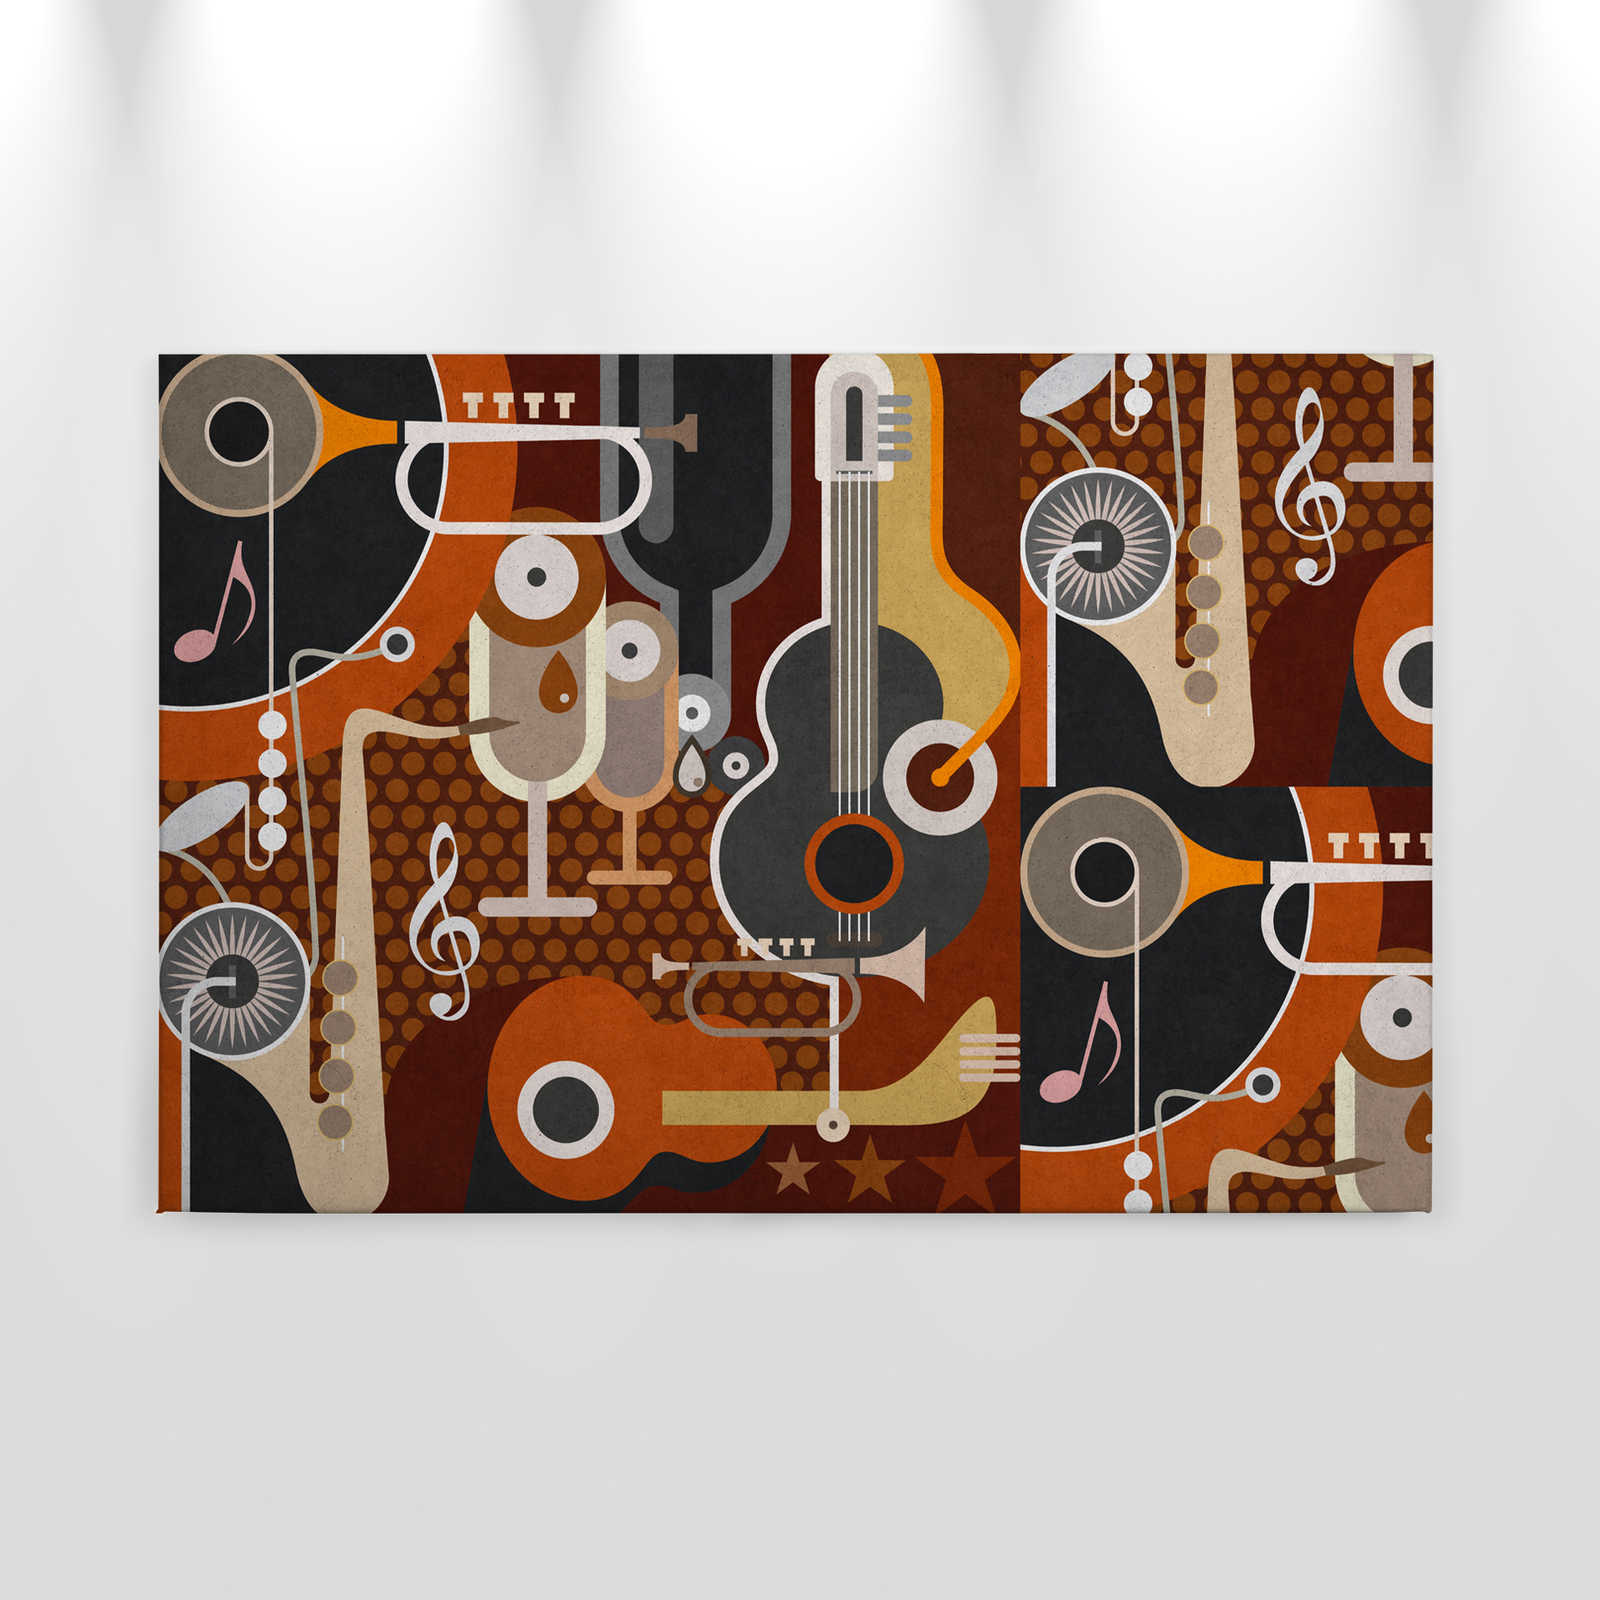             Wall of sound 1 - toile en structure béton, instruments de musique abstraits - 0,90 m x 0,60 m
        